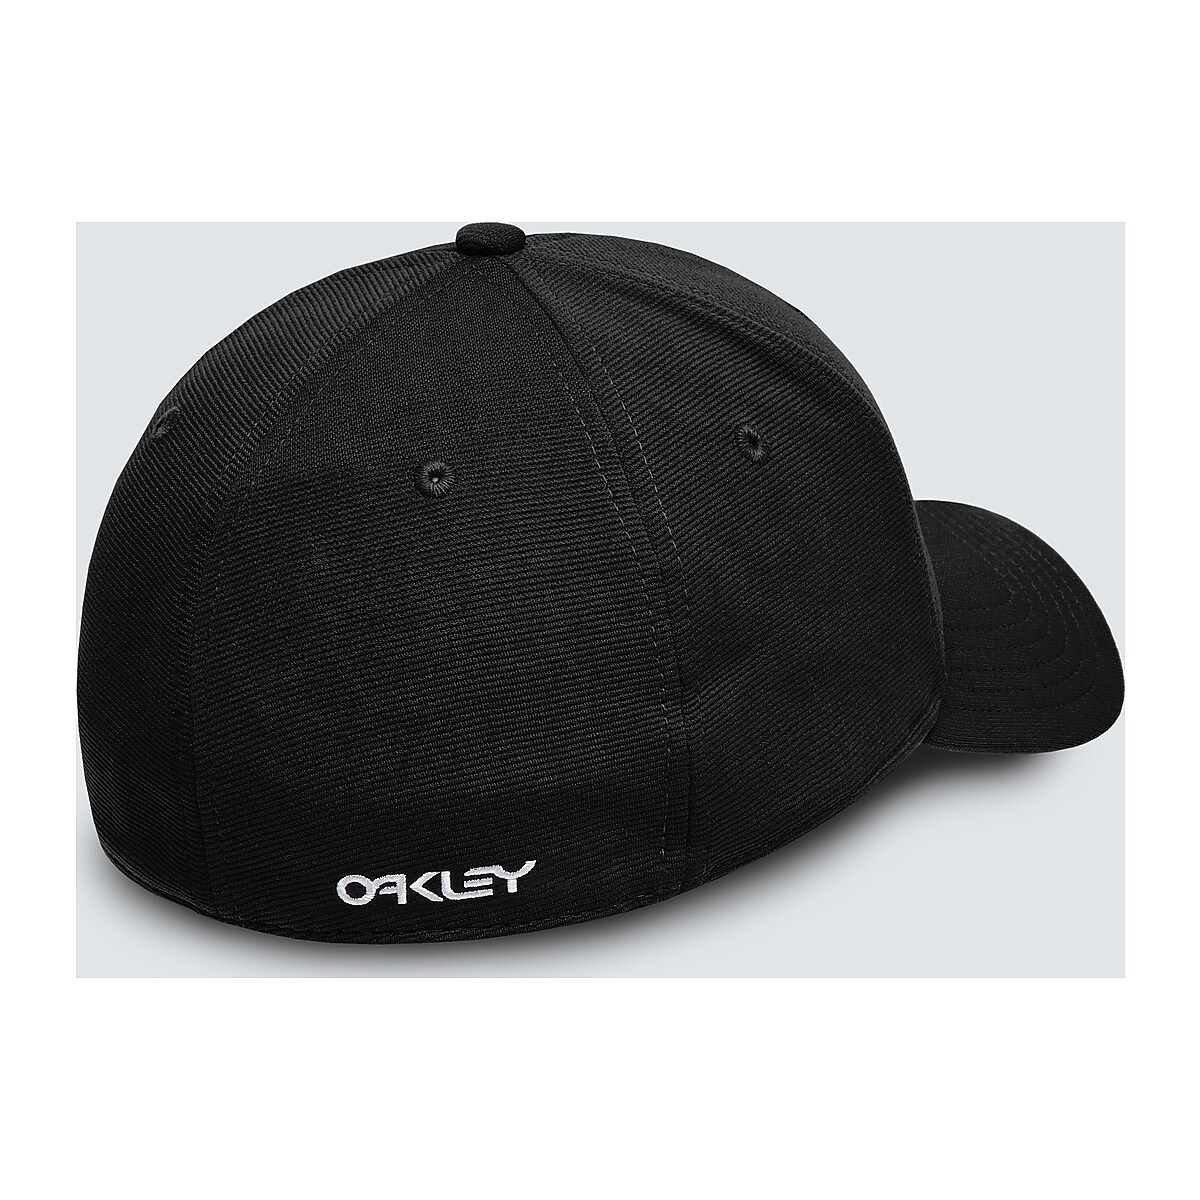 Oakley 6 Panel Stretch Metallic Hat - Black/American Flag | Oakley ROE Store